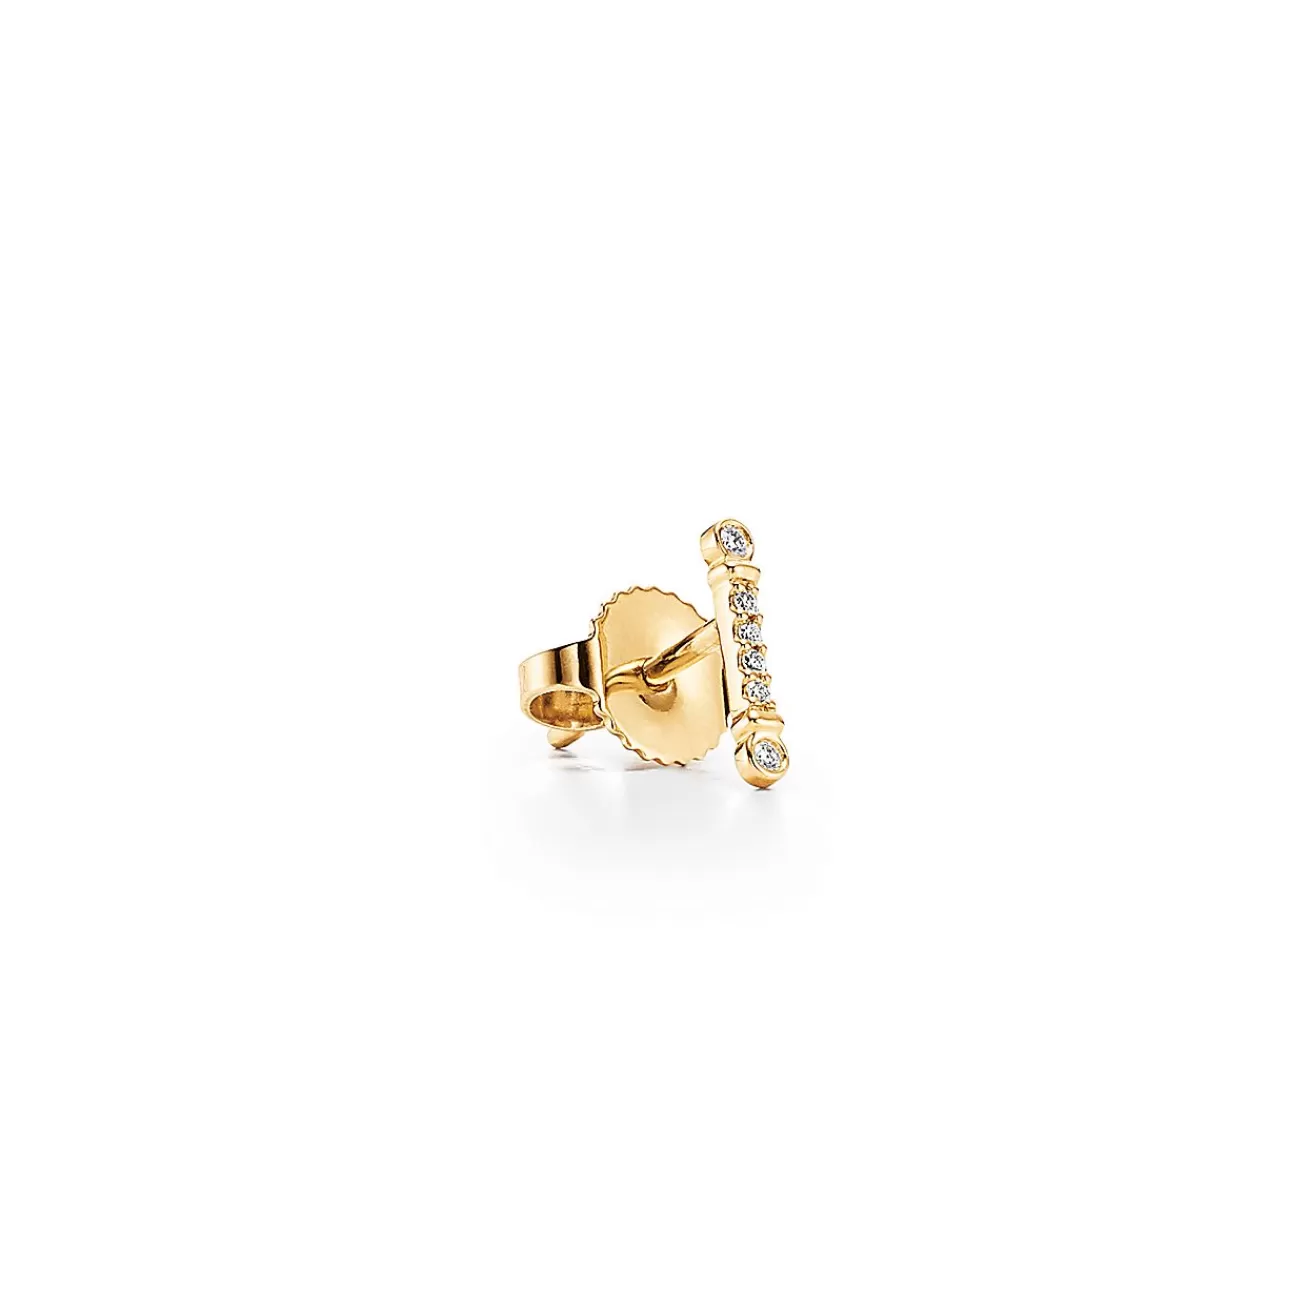 Tiffany & Co. Tiffany Fleur de Lis key bar earrings in 18k gold with diamonds. | ^ Earrings | Gifts for Her